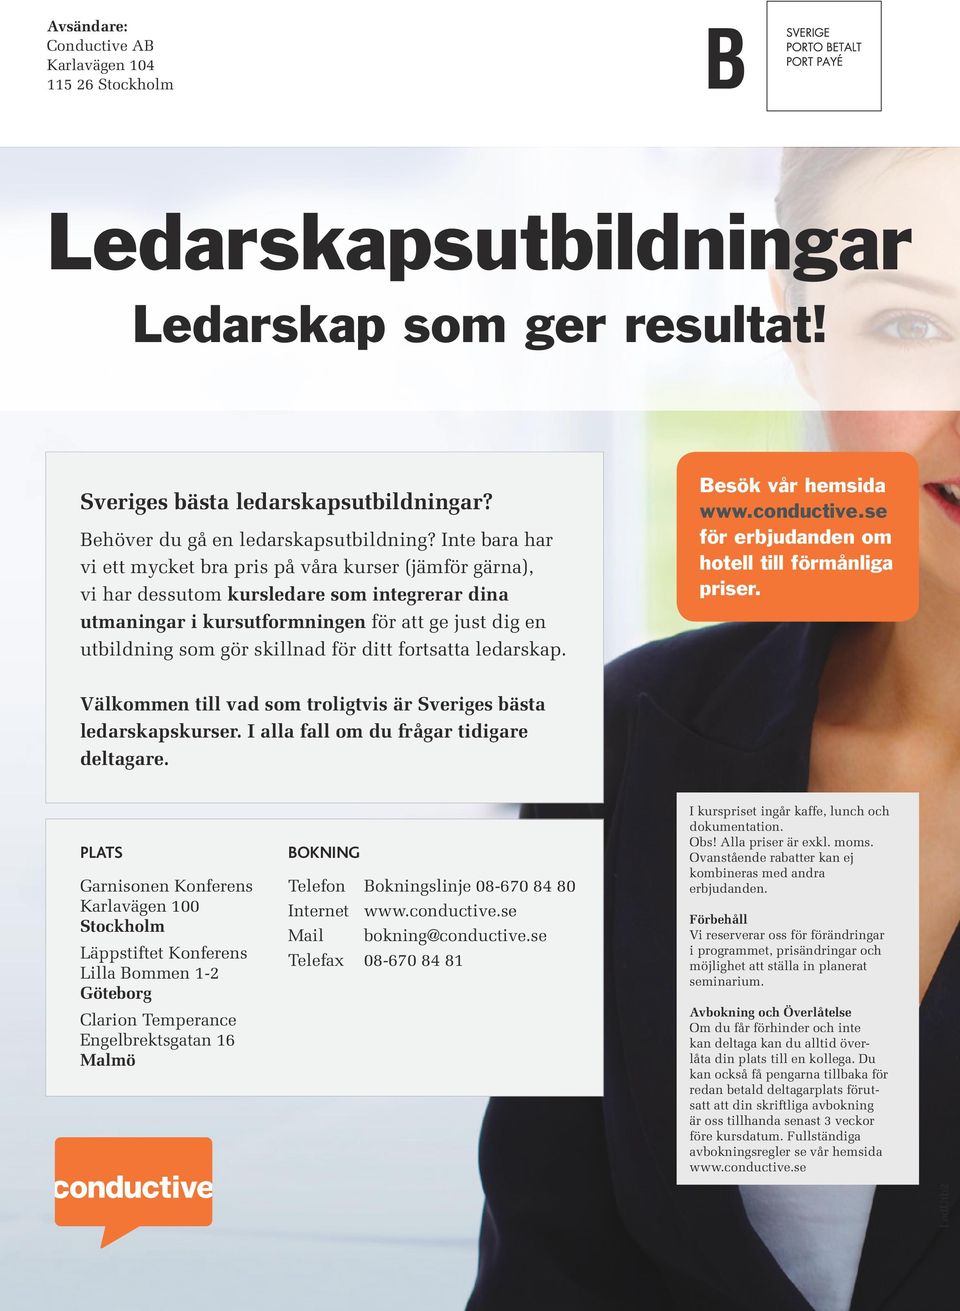 ditt fortsatta ledarskap. Besök vår hemsida www.conductive.se för erbjudanden om hotell till förmånliga priser. Välkommen till vad som troligtvis är Sveriges bästa ledarskapskurser.